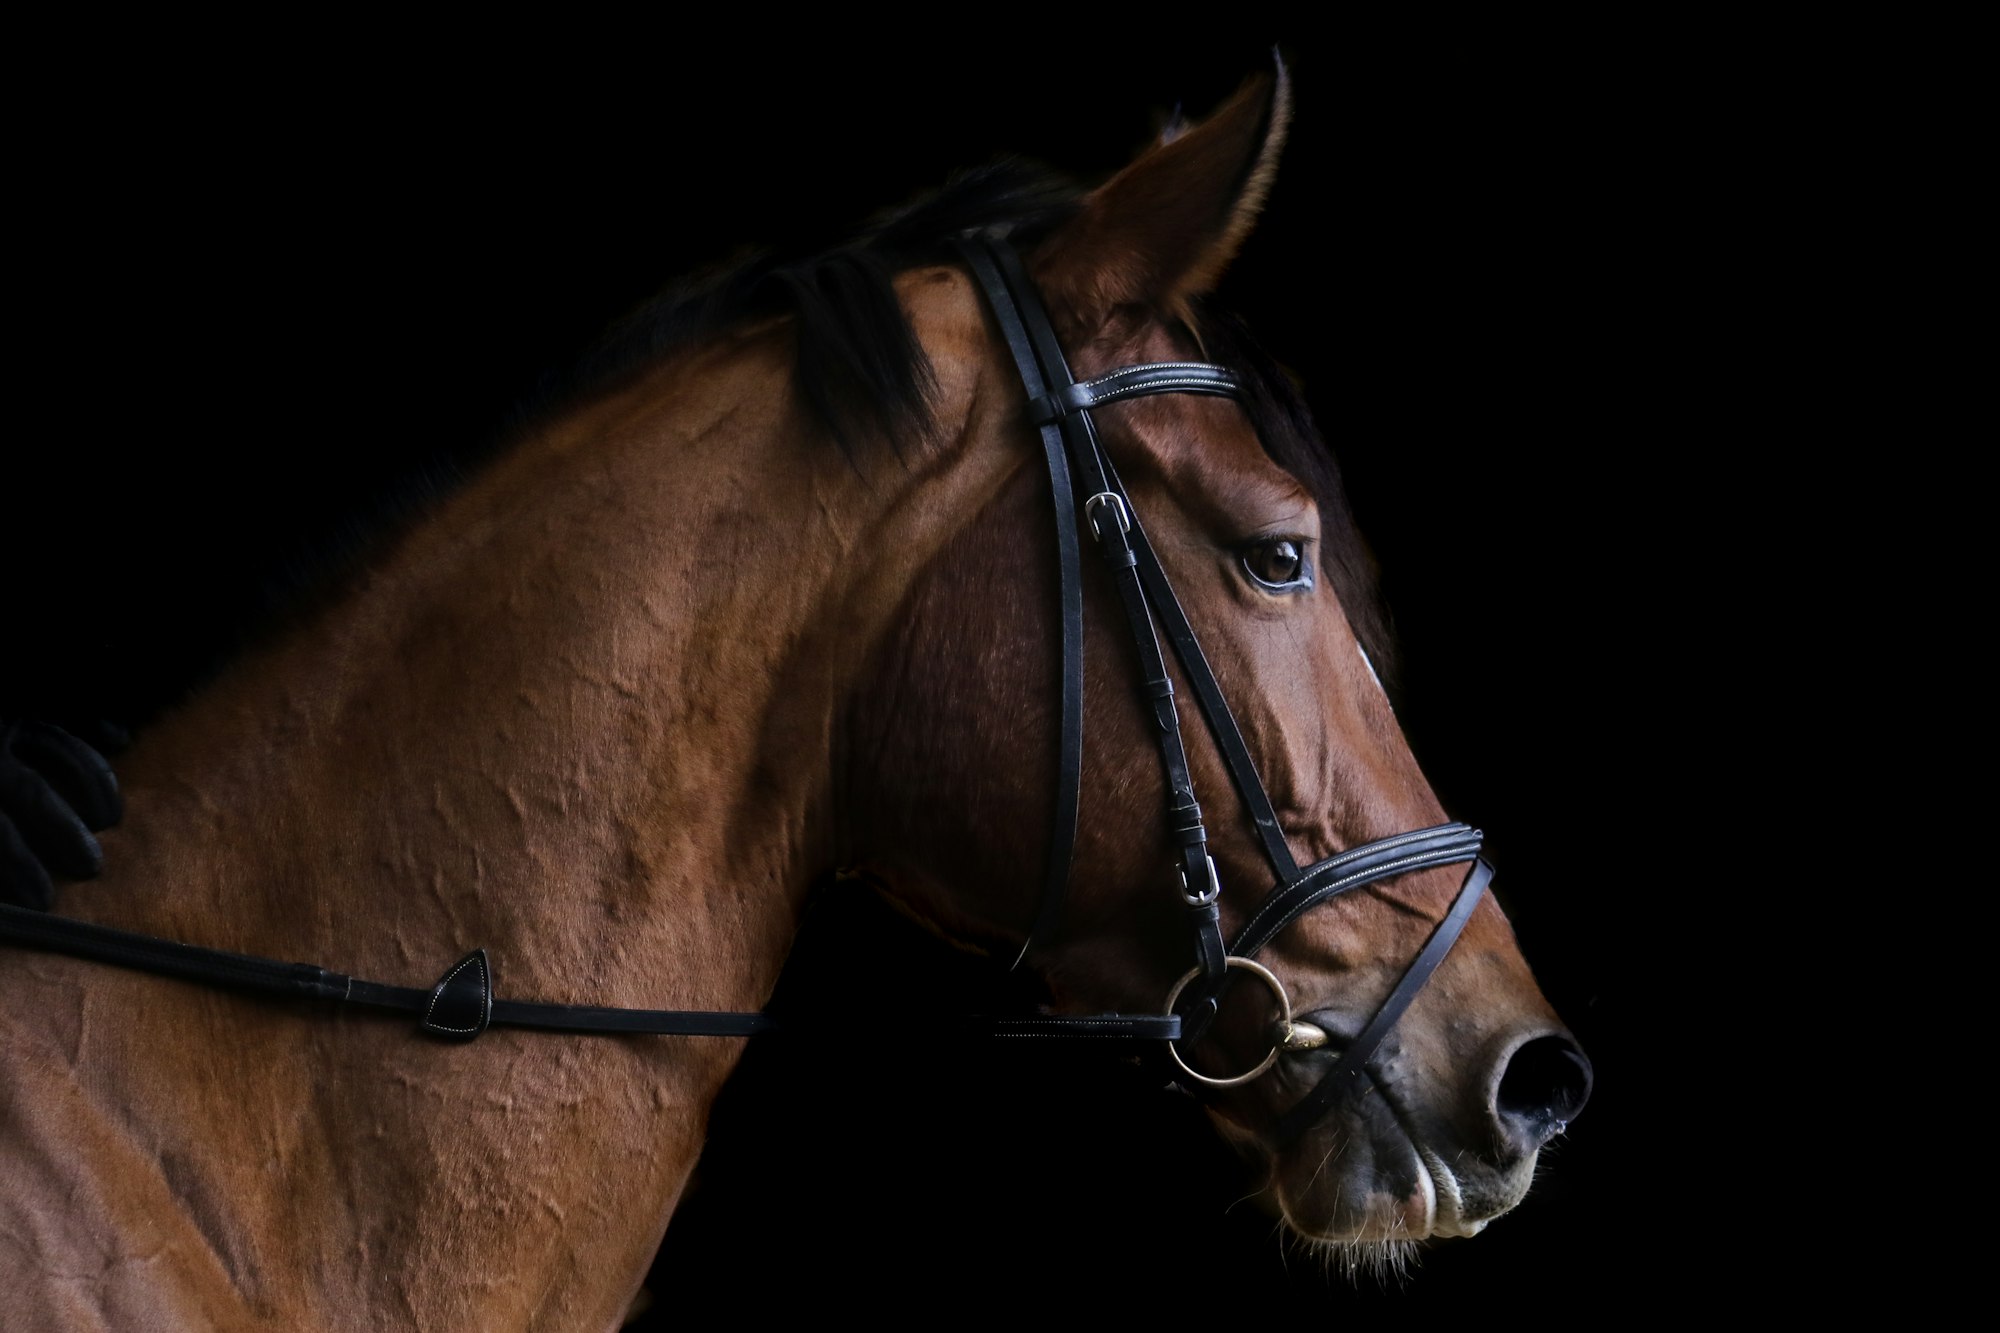 حقائق عن الحصان العربي و خمس أساسيات مهمة للعناية به